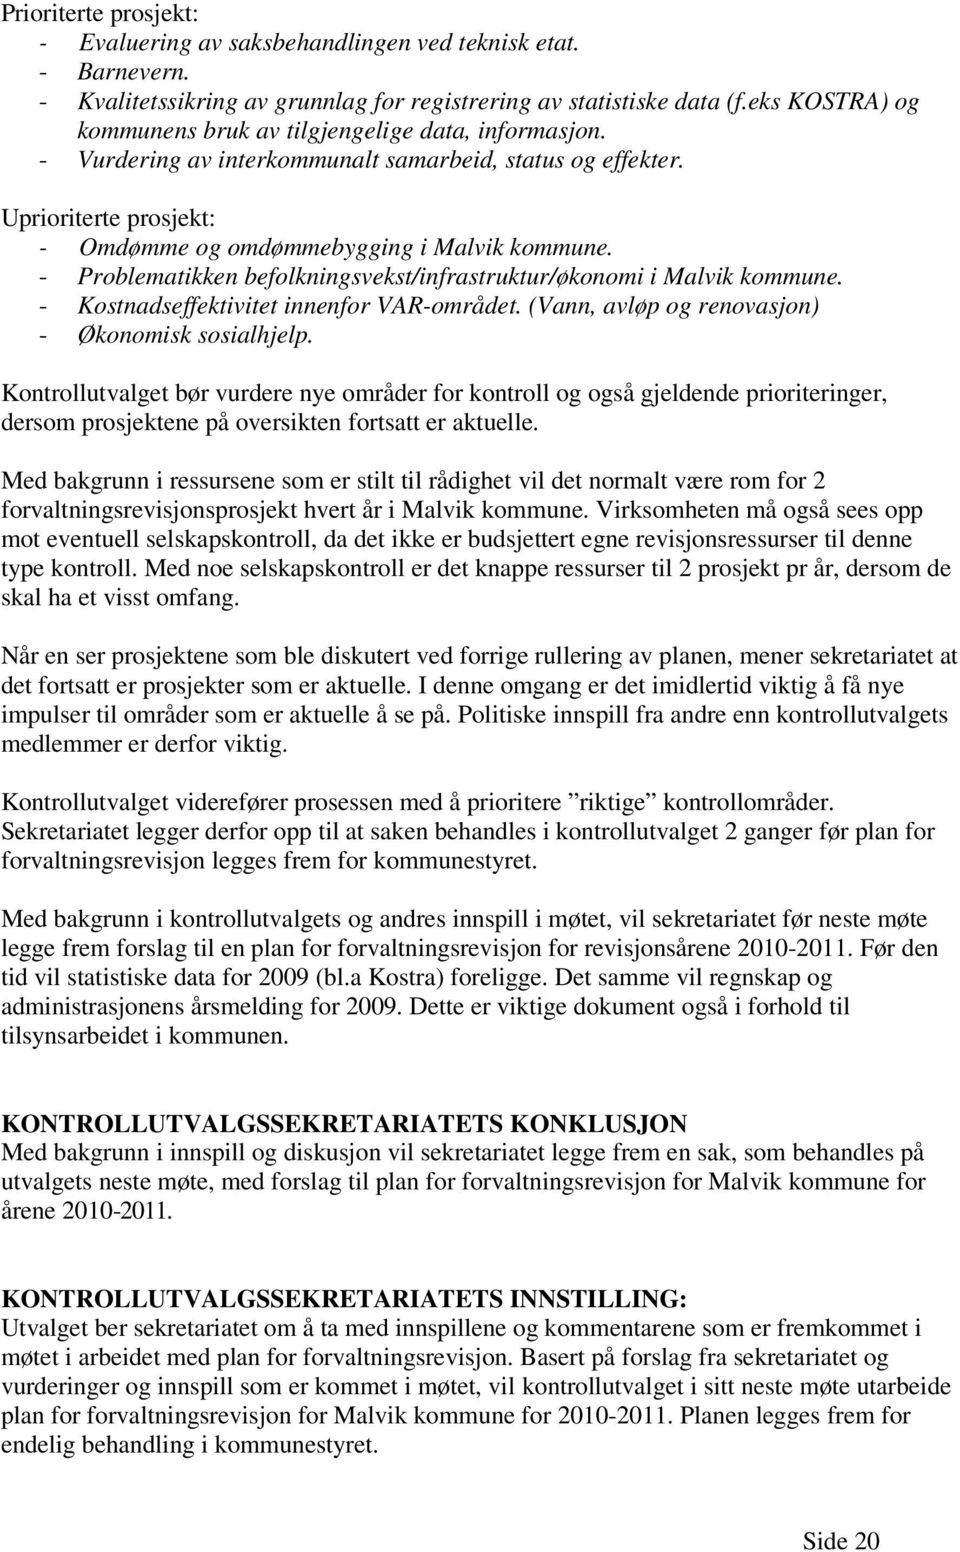 - Problematikken befolkningsvekst/infrastruktur/økonomi i Malvik kommune. - Kostnadseffektivitet innenfor VAR-området. (Vann, avløp og renovasjon) - Økonomisk sosialhjelp.